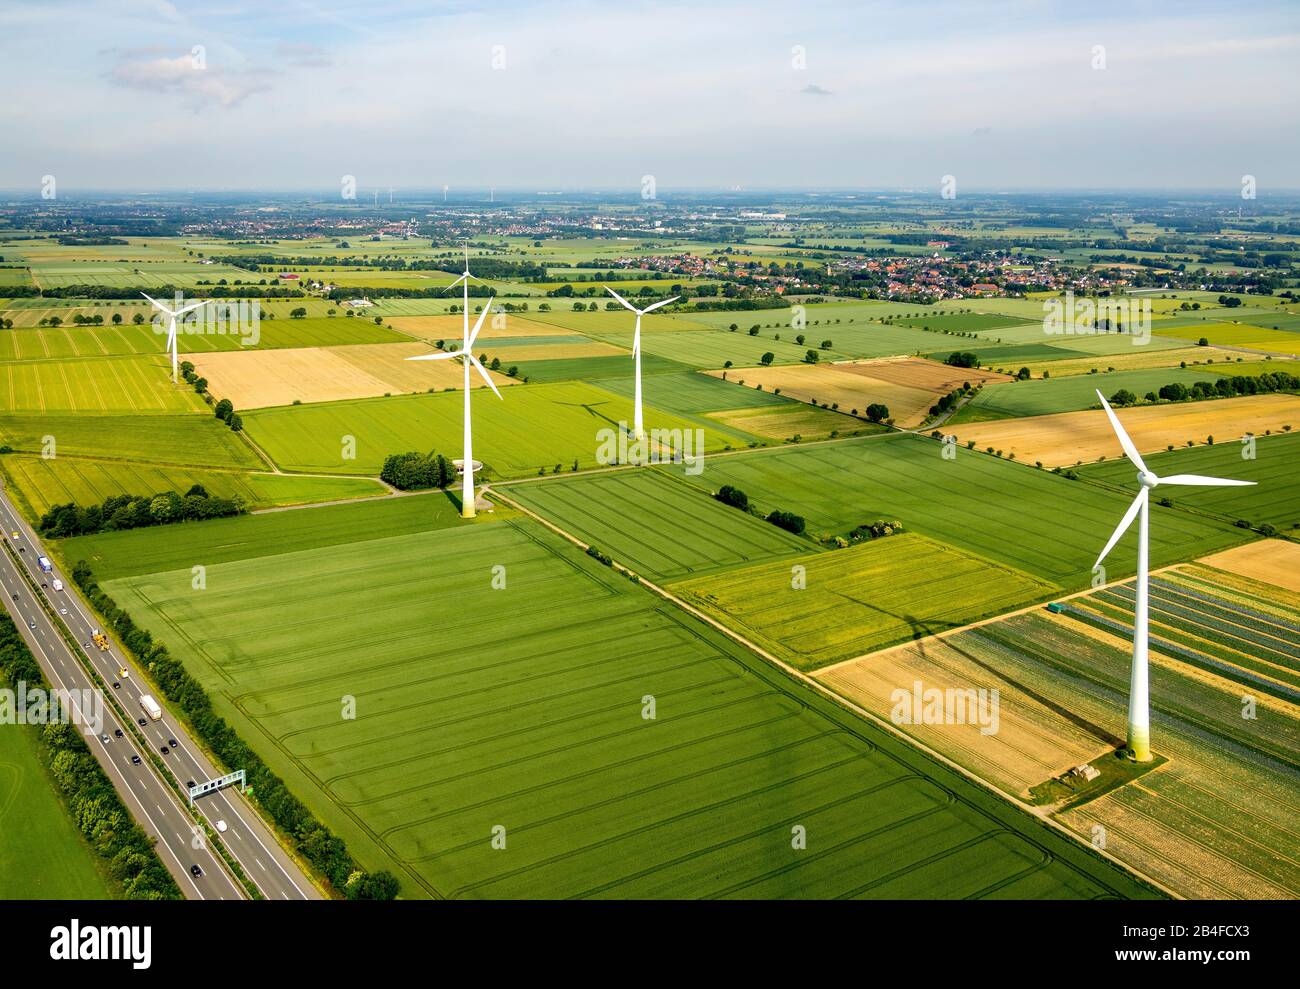 Vue aérienne des centrales éoliennes, de la ferme éolienne sur l'autoroute Westönner, de la route Mawicker et de l'autoroute A 44 avec champs et prairies à Werl dans le Soester Börde dans l'état de Rhénanie-du-Nord-Westphalie en Allemagne, Werl, Soester Börde, Rhénanie-du-Nord-Westphalie, Allemagne, Höhberg Banque D'Images